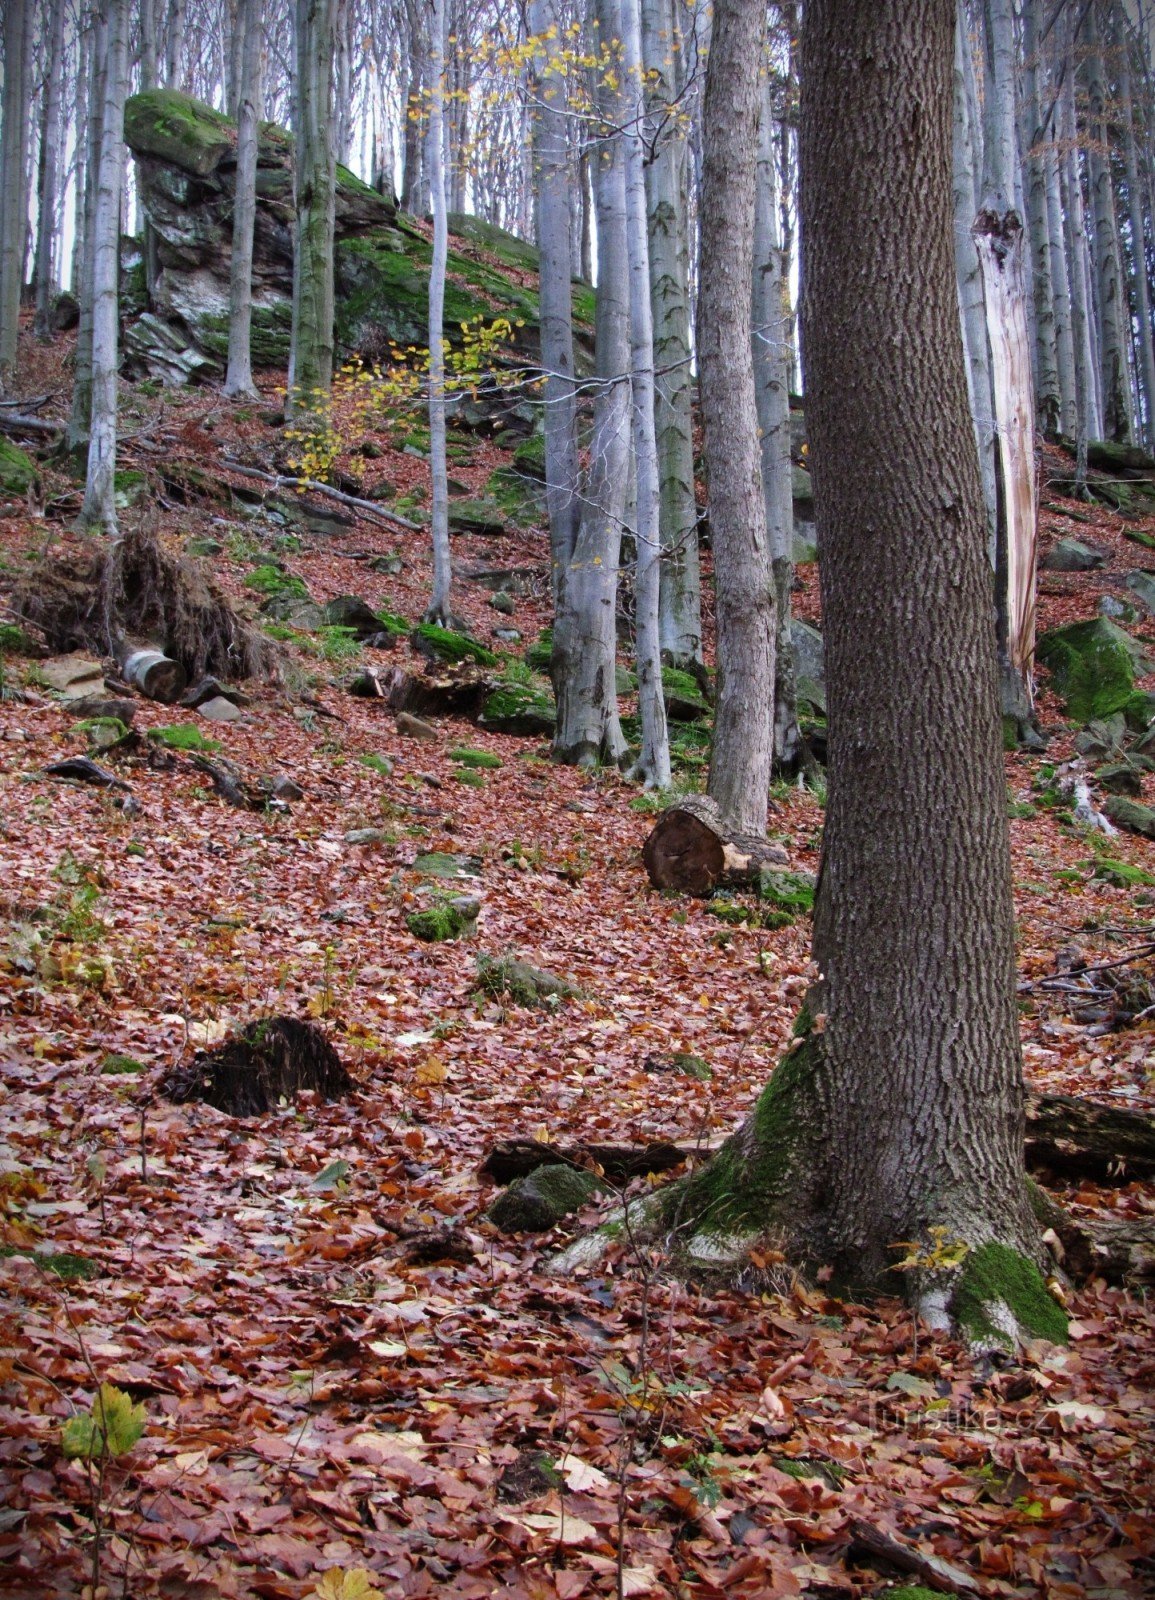 Čerňava - rocas sobre el camino forestal